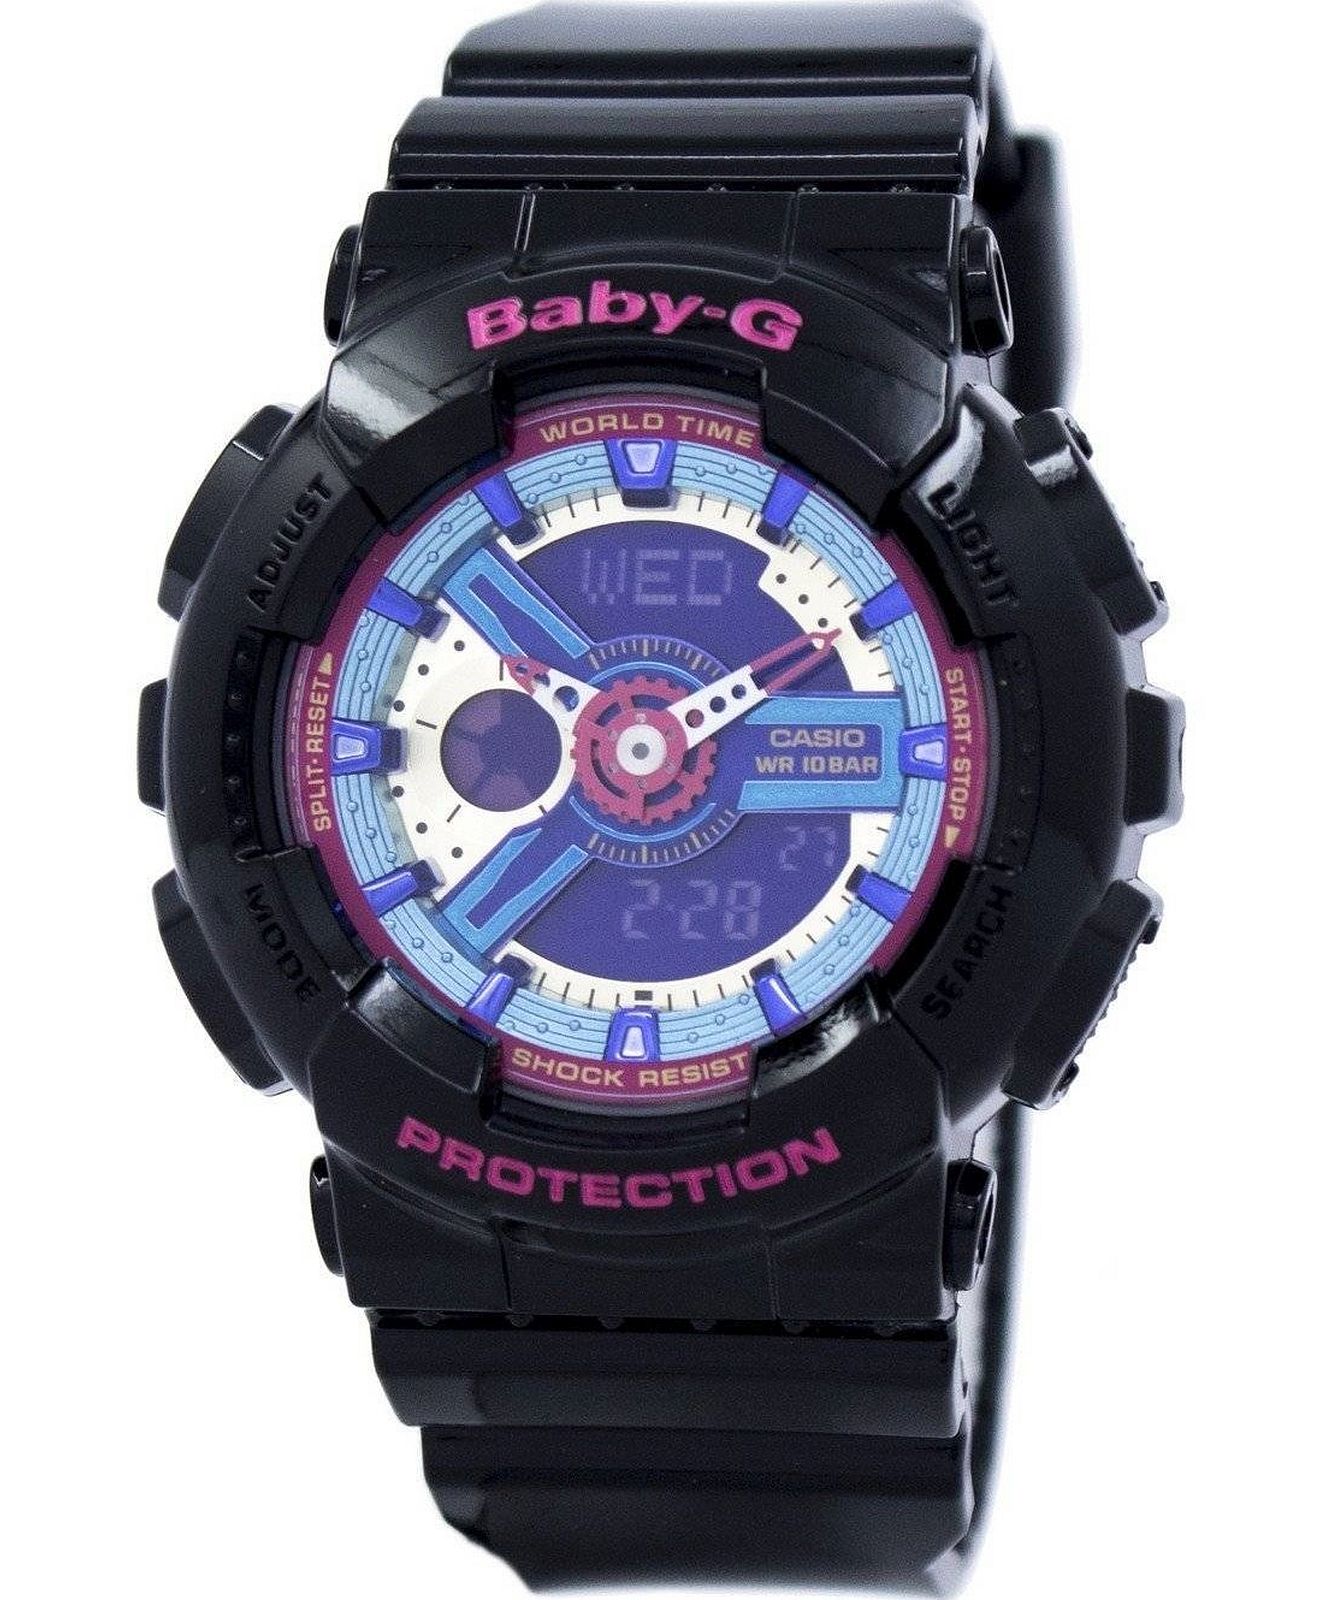 Baby-G - Casio Design Watch • Watchard.com